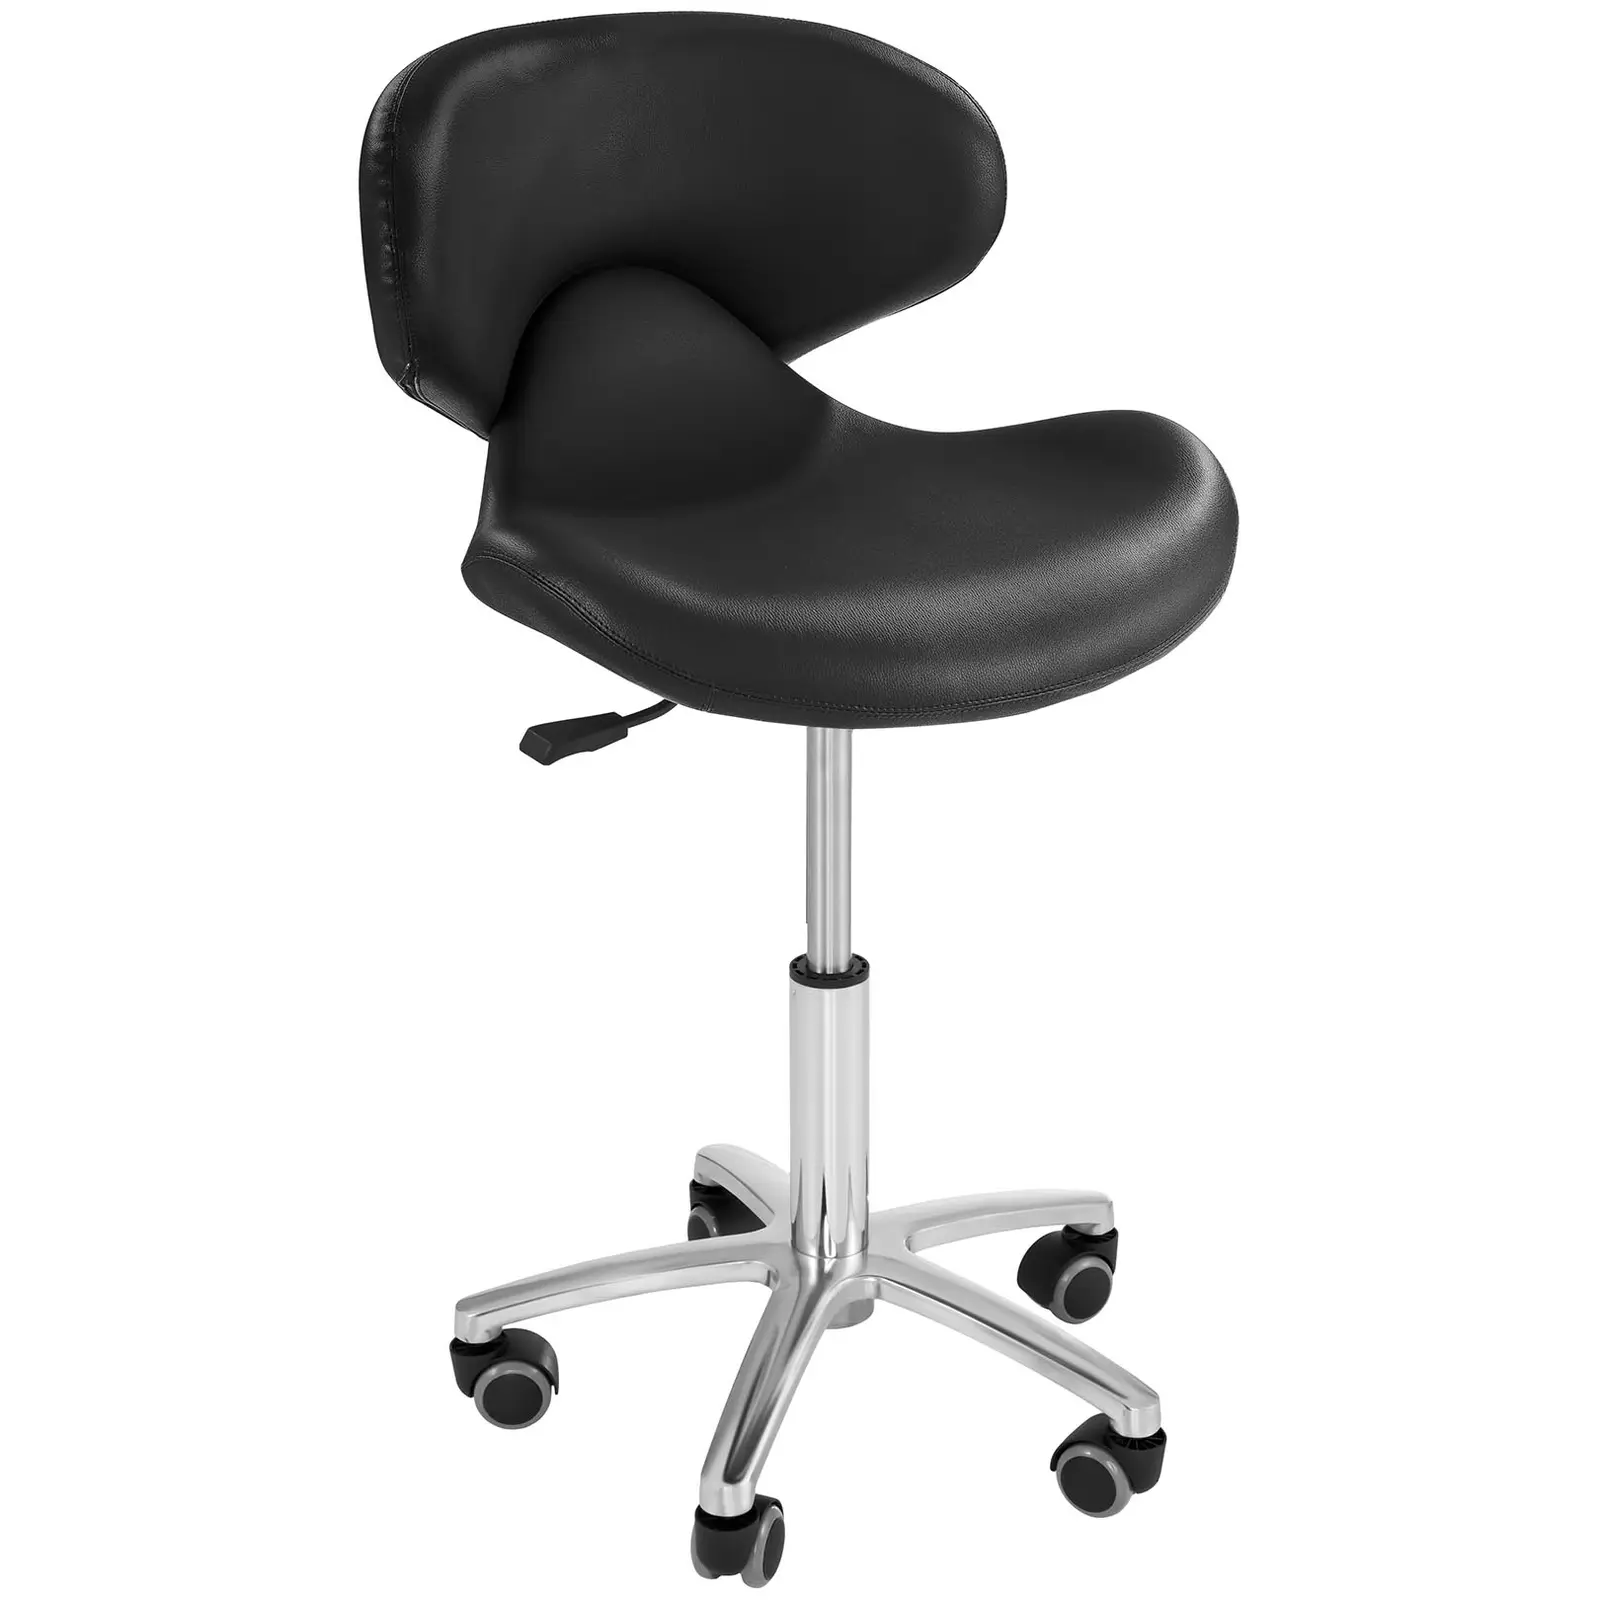 Fodrász szék - 440–570 mm - 150 kg - Black